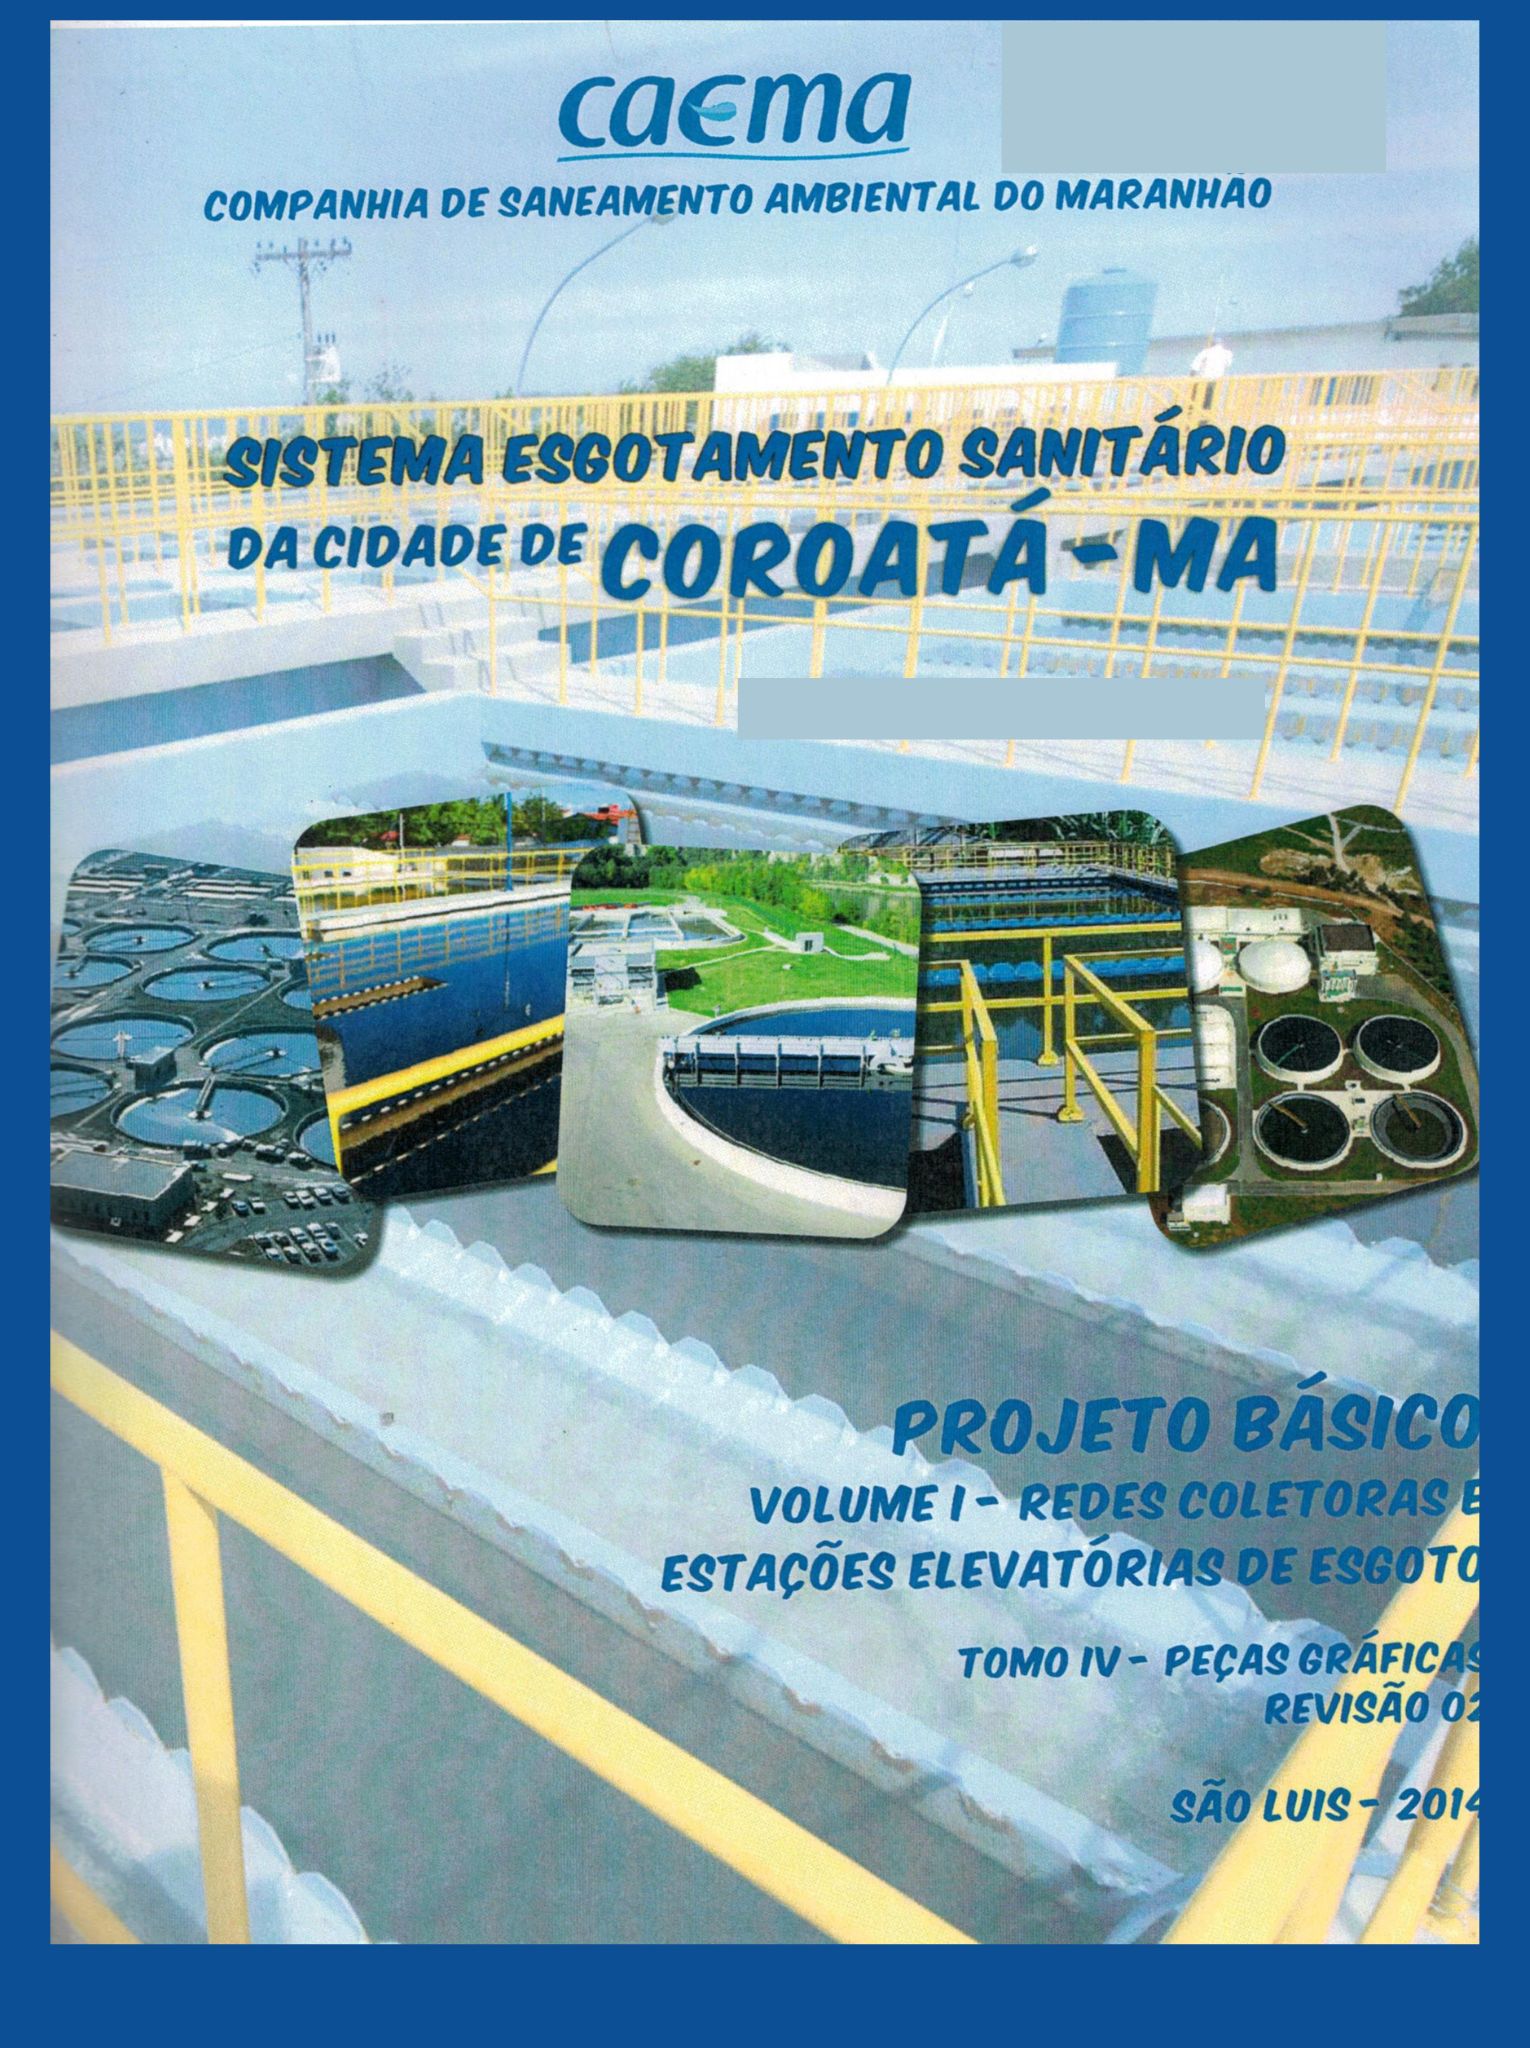 Imagem da capa do Projeto Técnico com informações sobre título e autoria